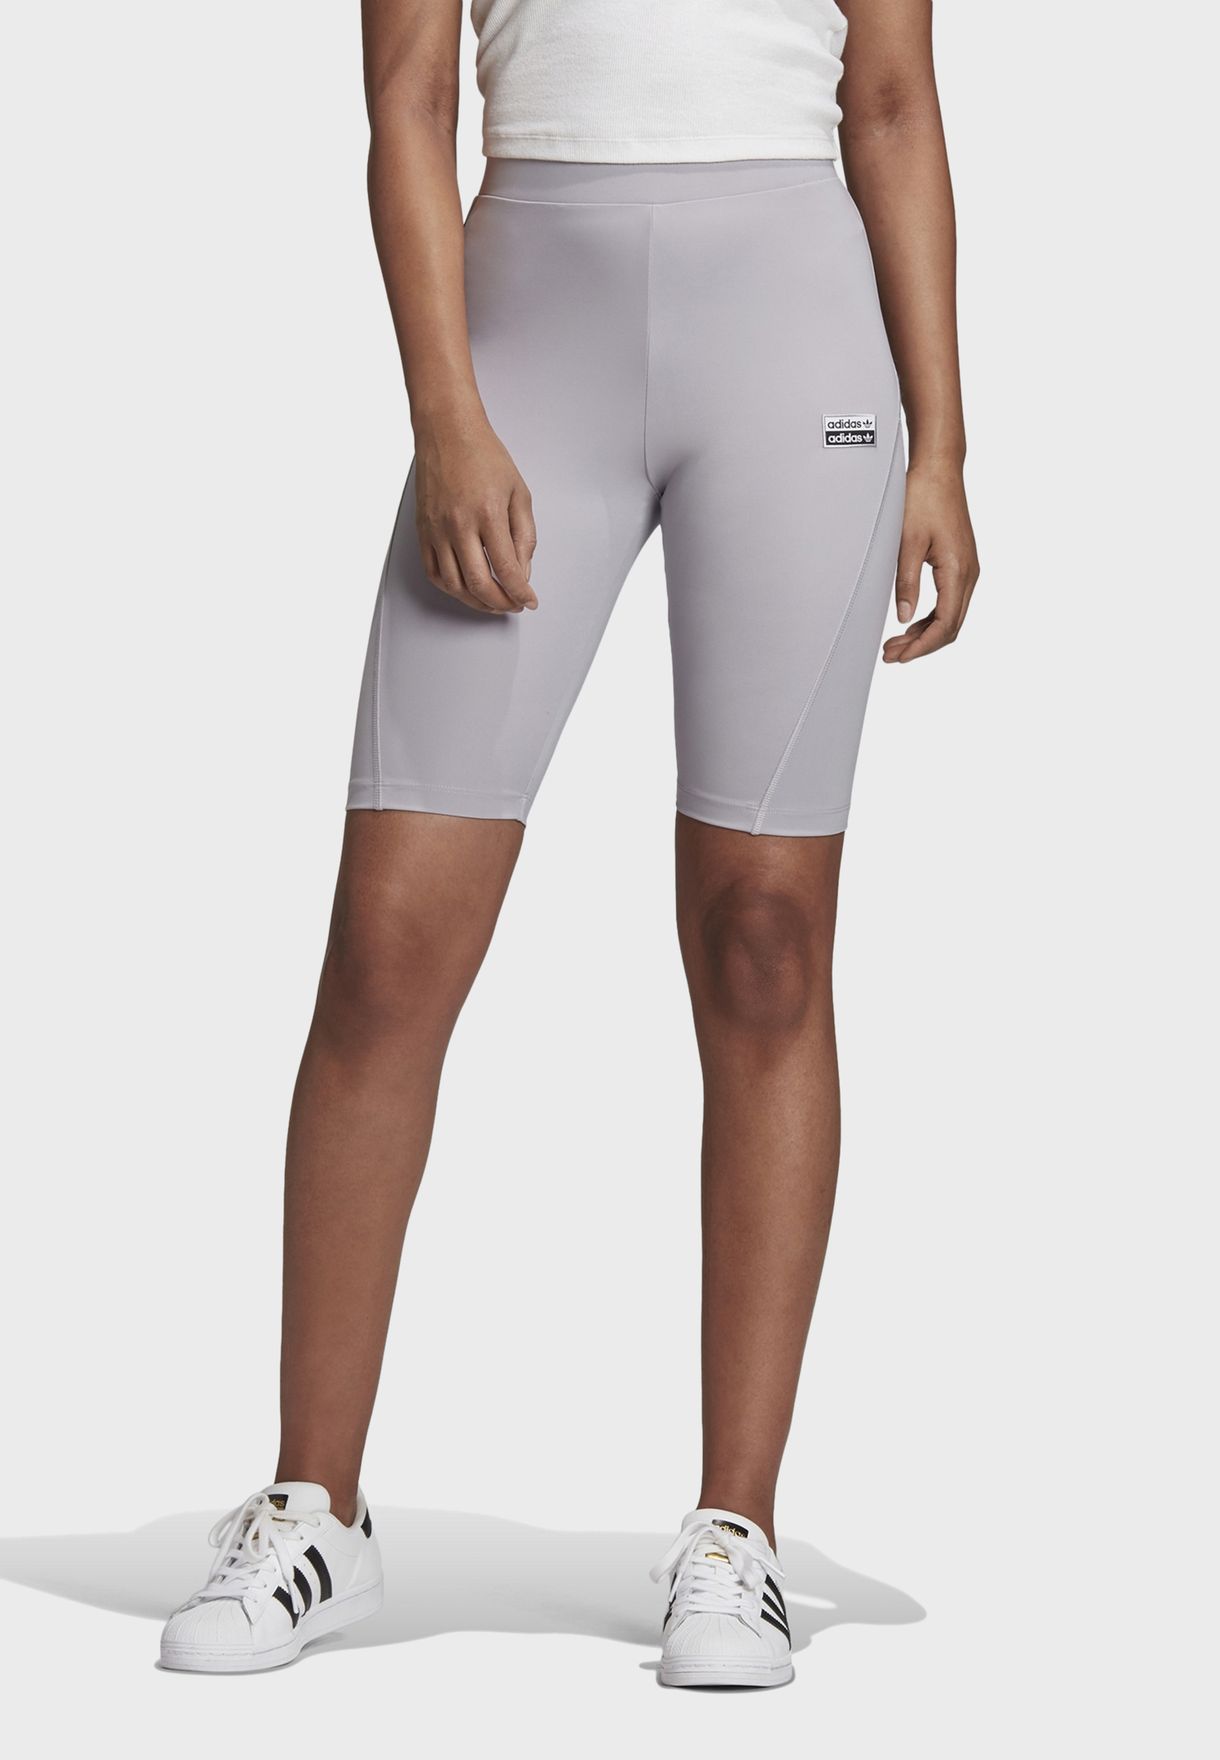 grey adidas cycling shorts